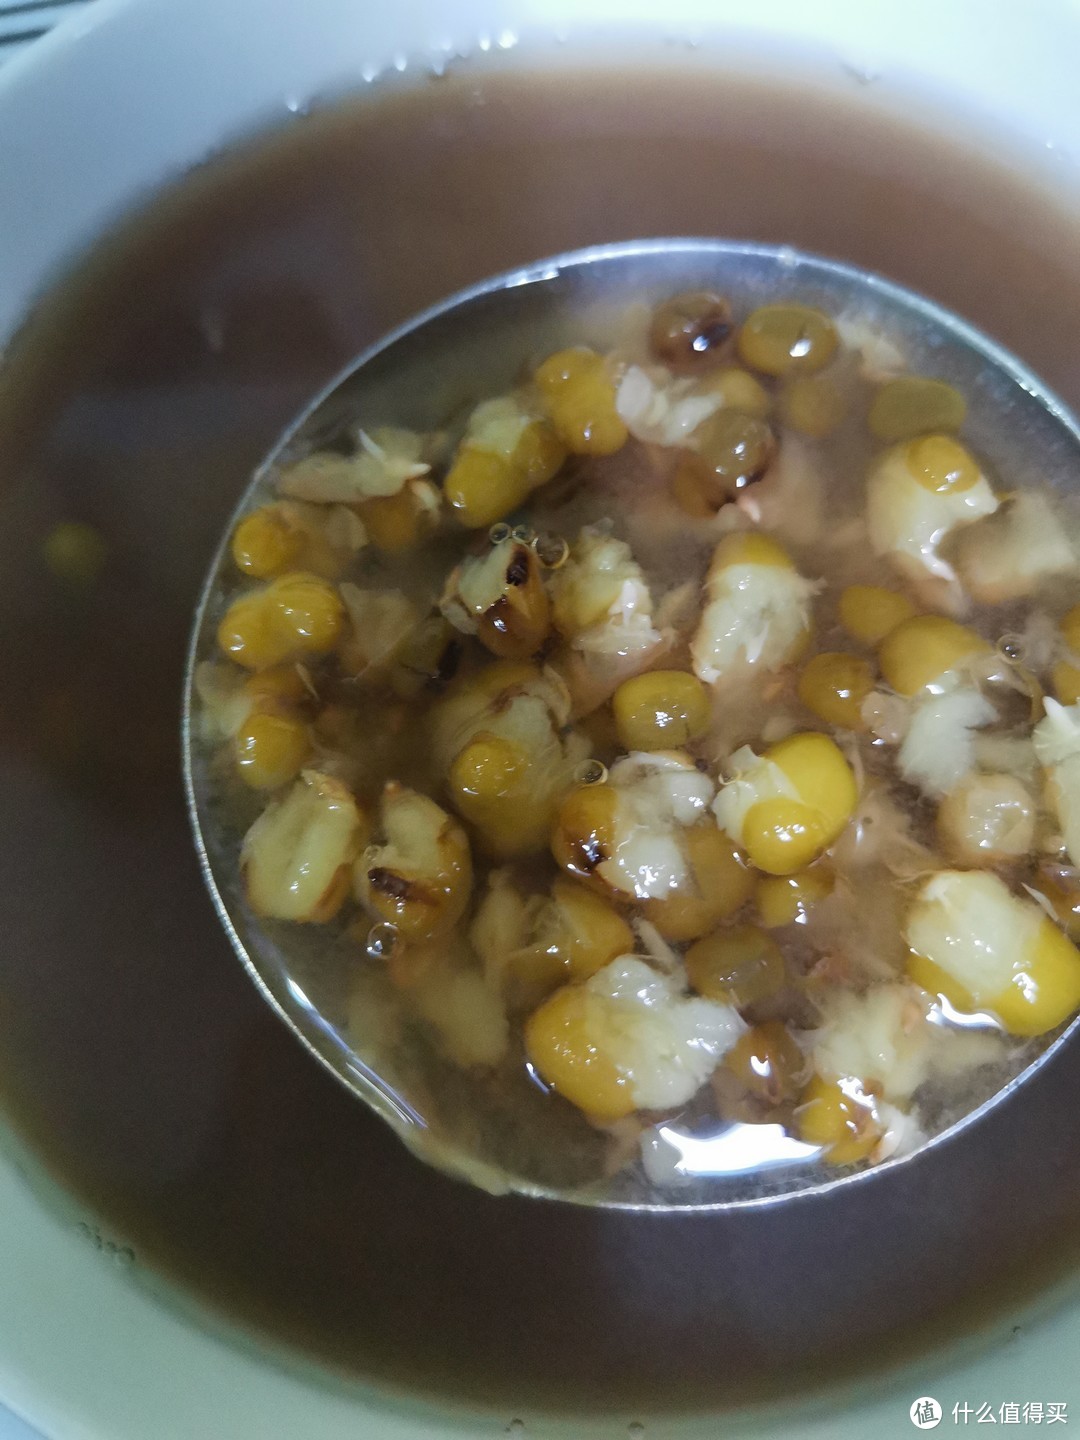 清凉又解暑的绿豆汤，炎炎夏日不能少了它